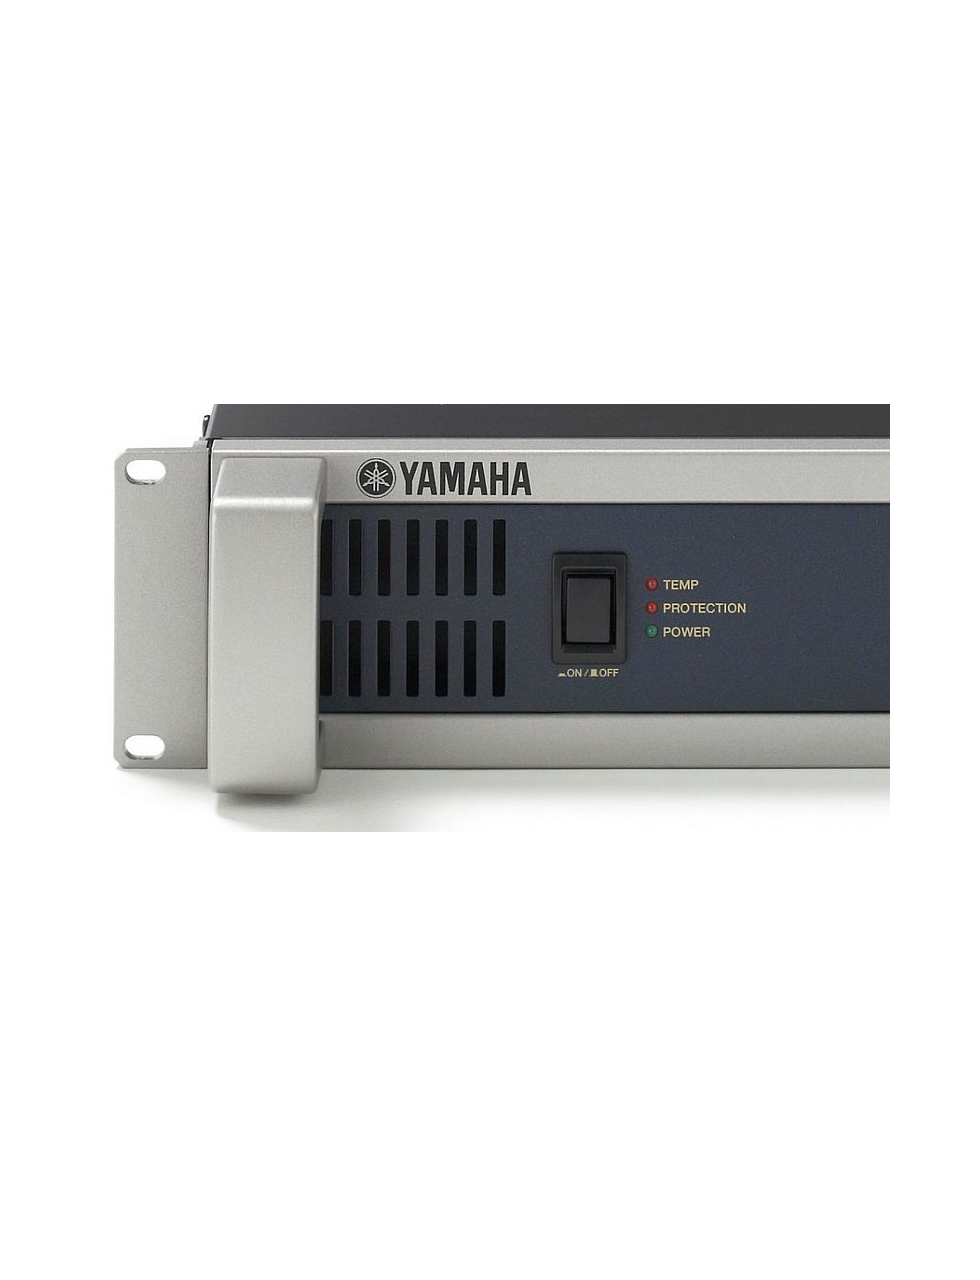 Yamaha-P2500S-801417-800.png